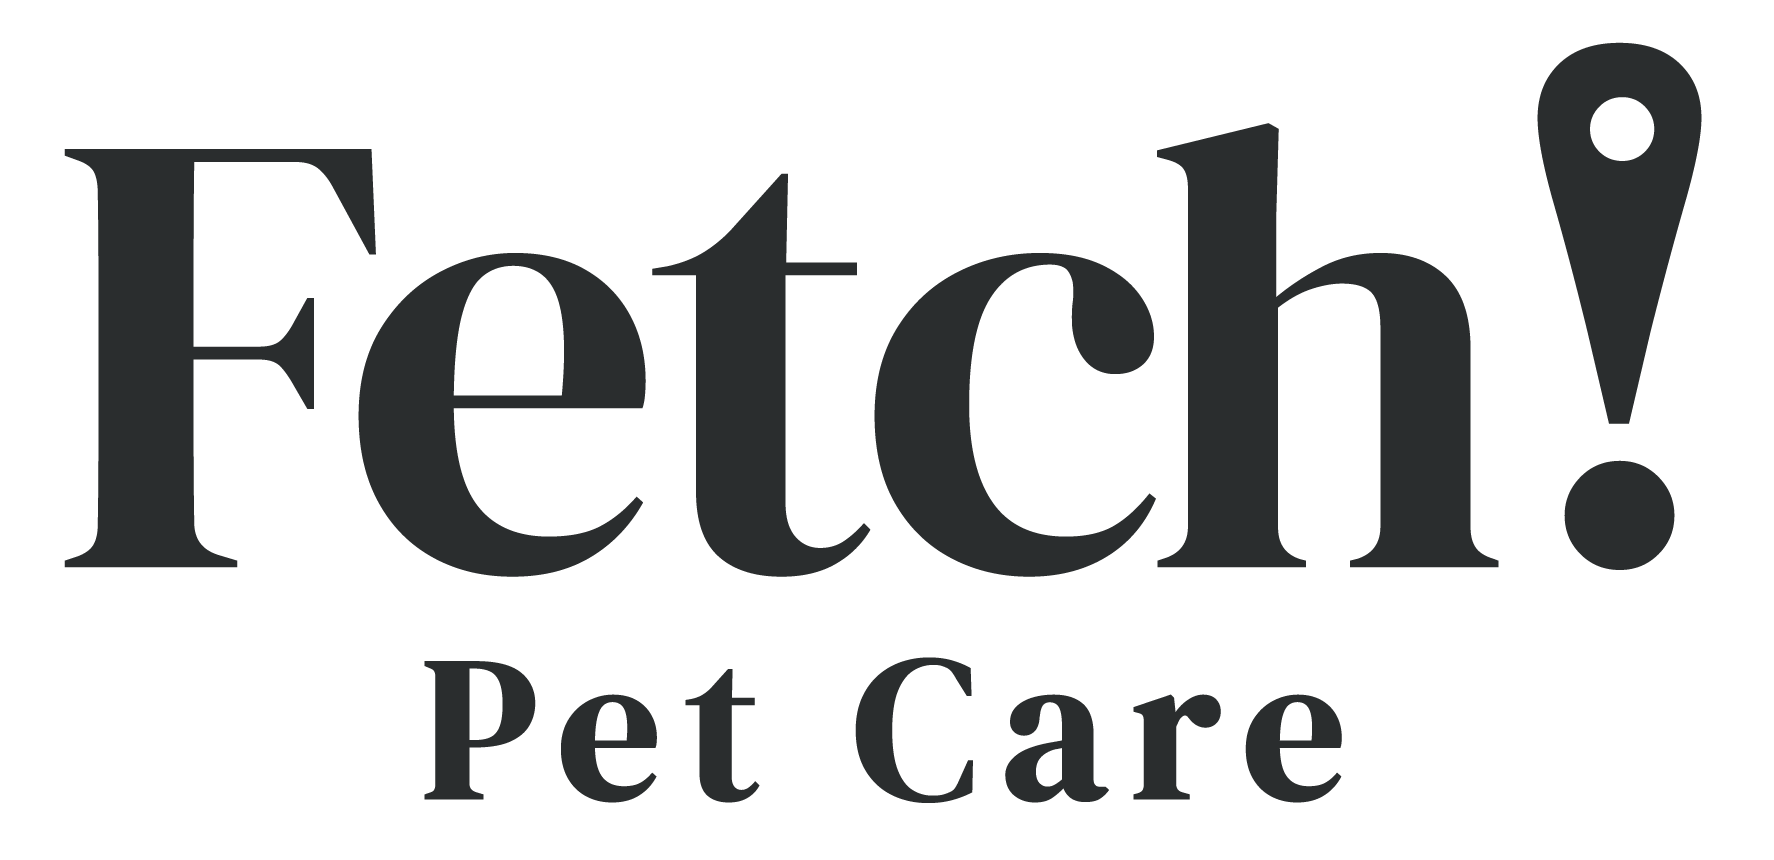 Fetch! Petcare